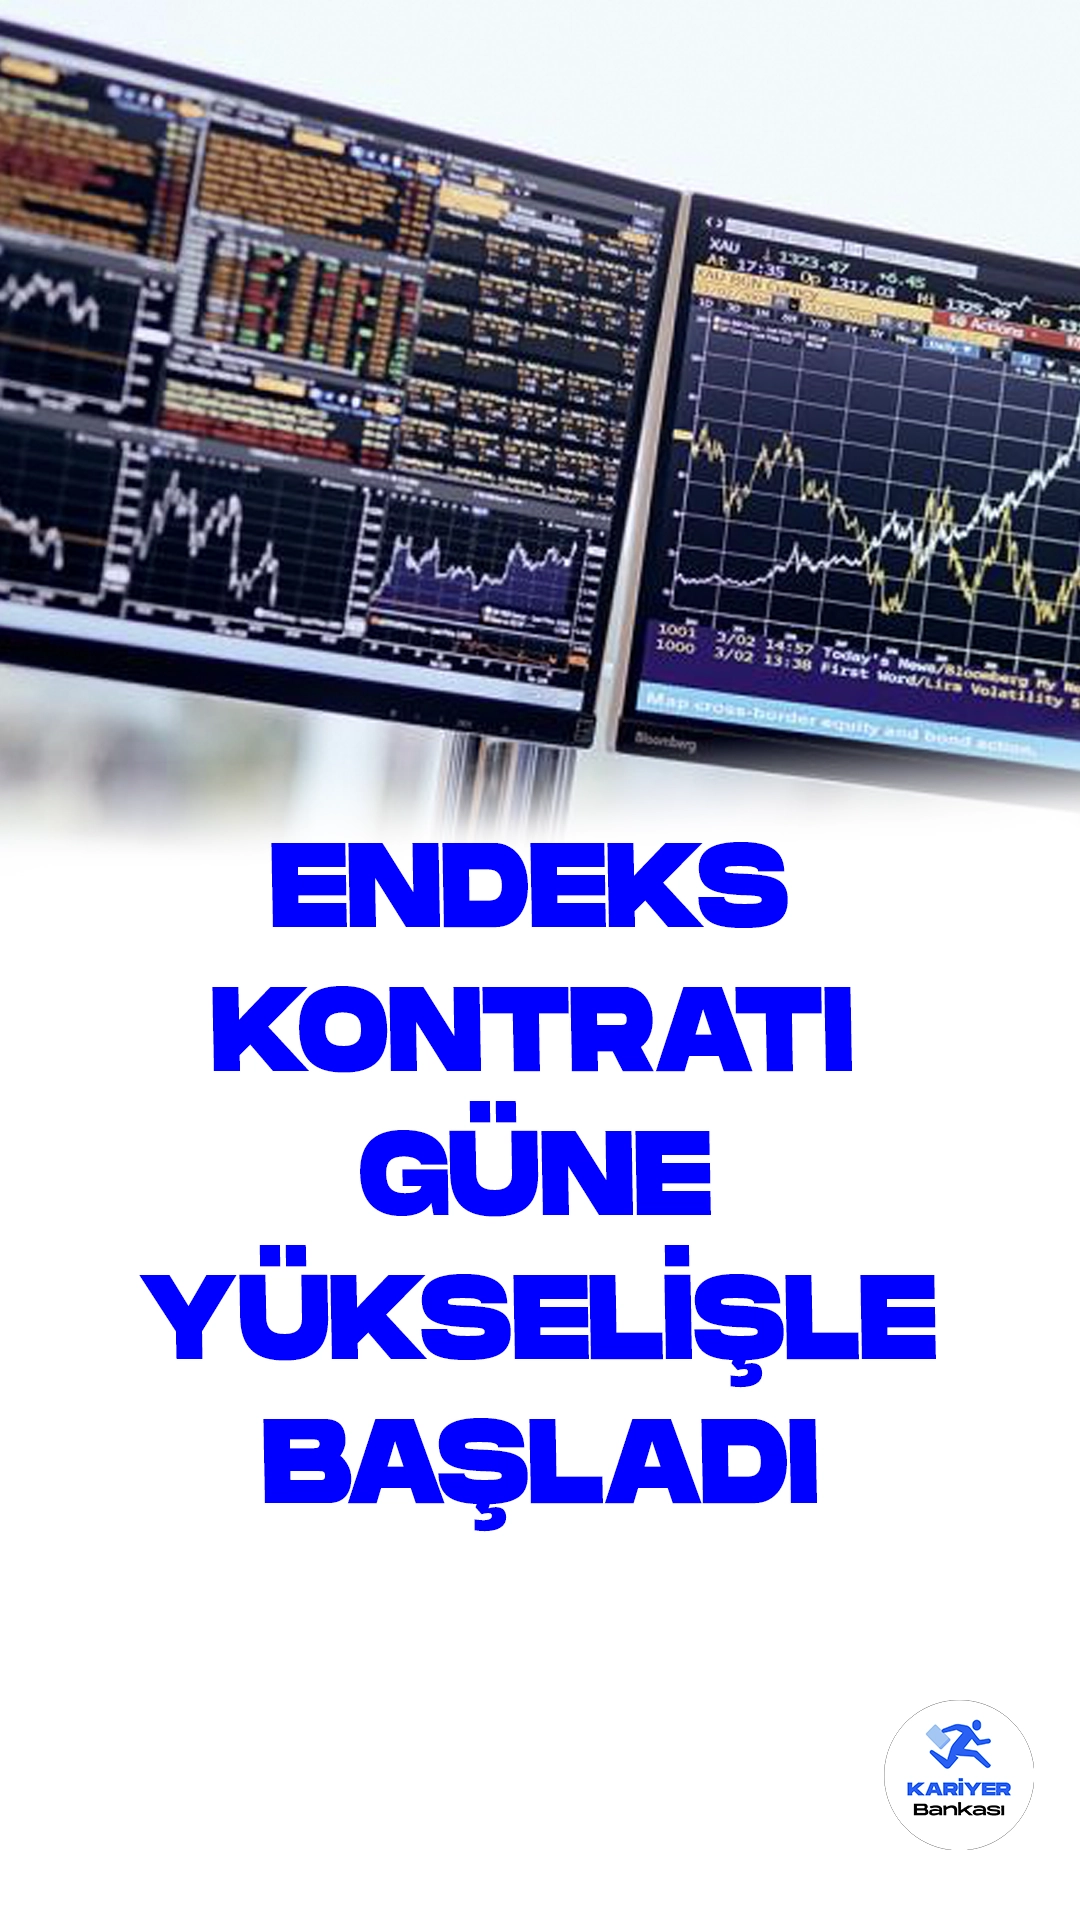 BIST 30 Kontratı Güne Yükselişle Başladı.Borsa İstanbul Vadeli İşlem ve Opsiyon Piyasası'nda ağustos vadeli BIST 30 endeksine dayalı kontrat, güne %0,3 artışla 8.910,00 puandan başladı.